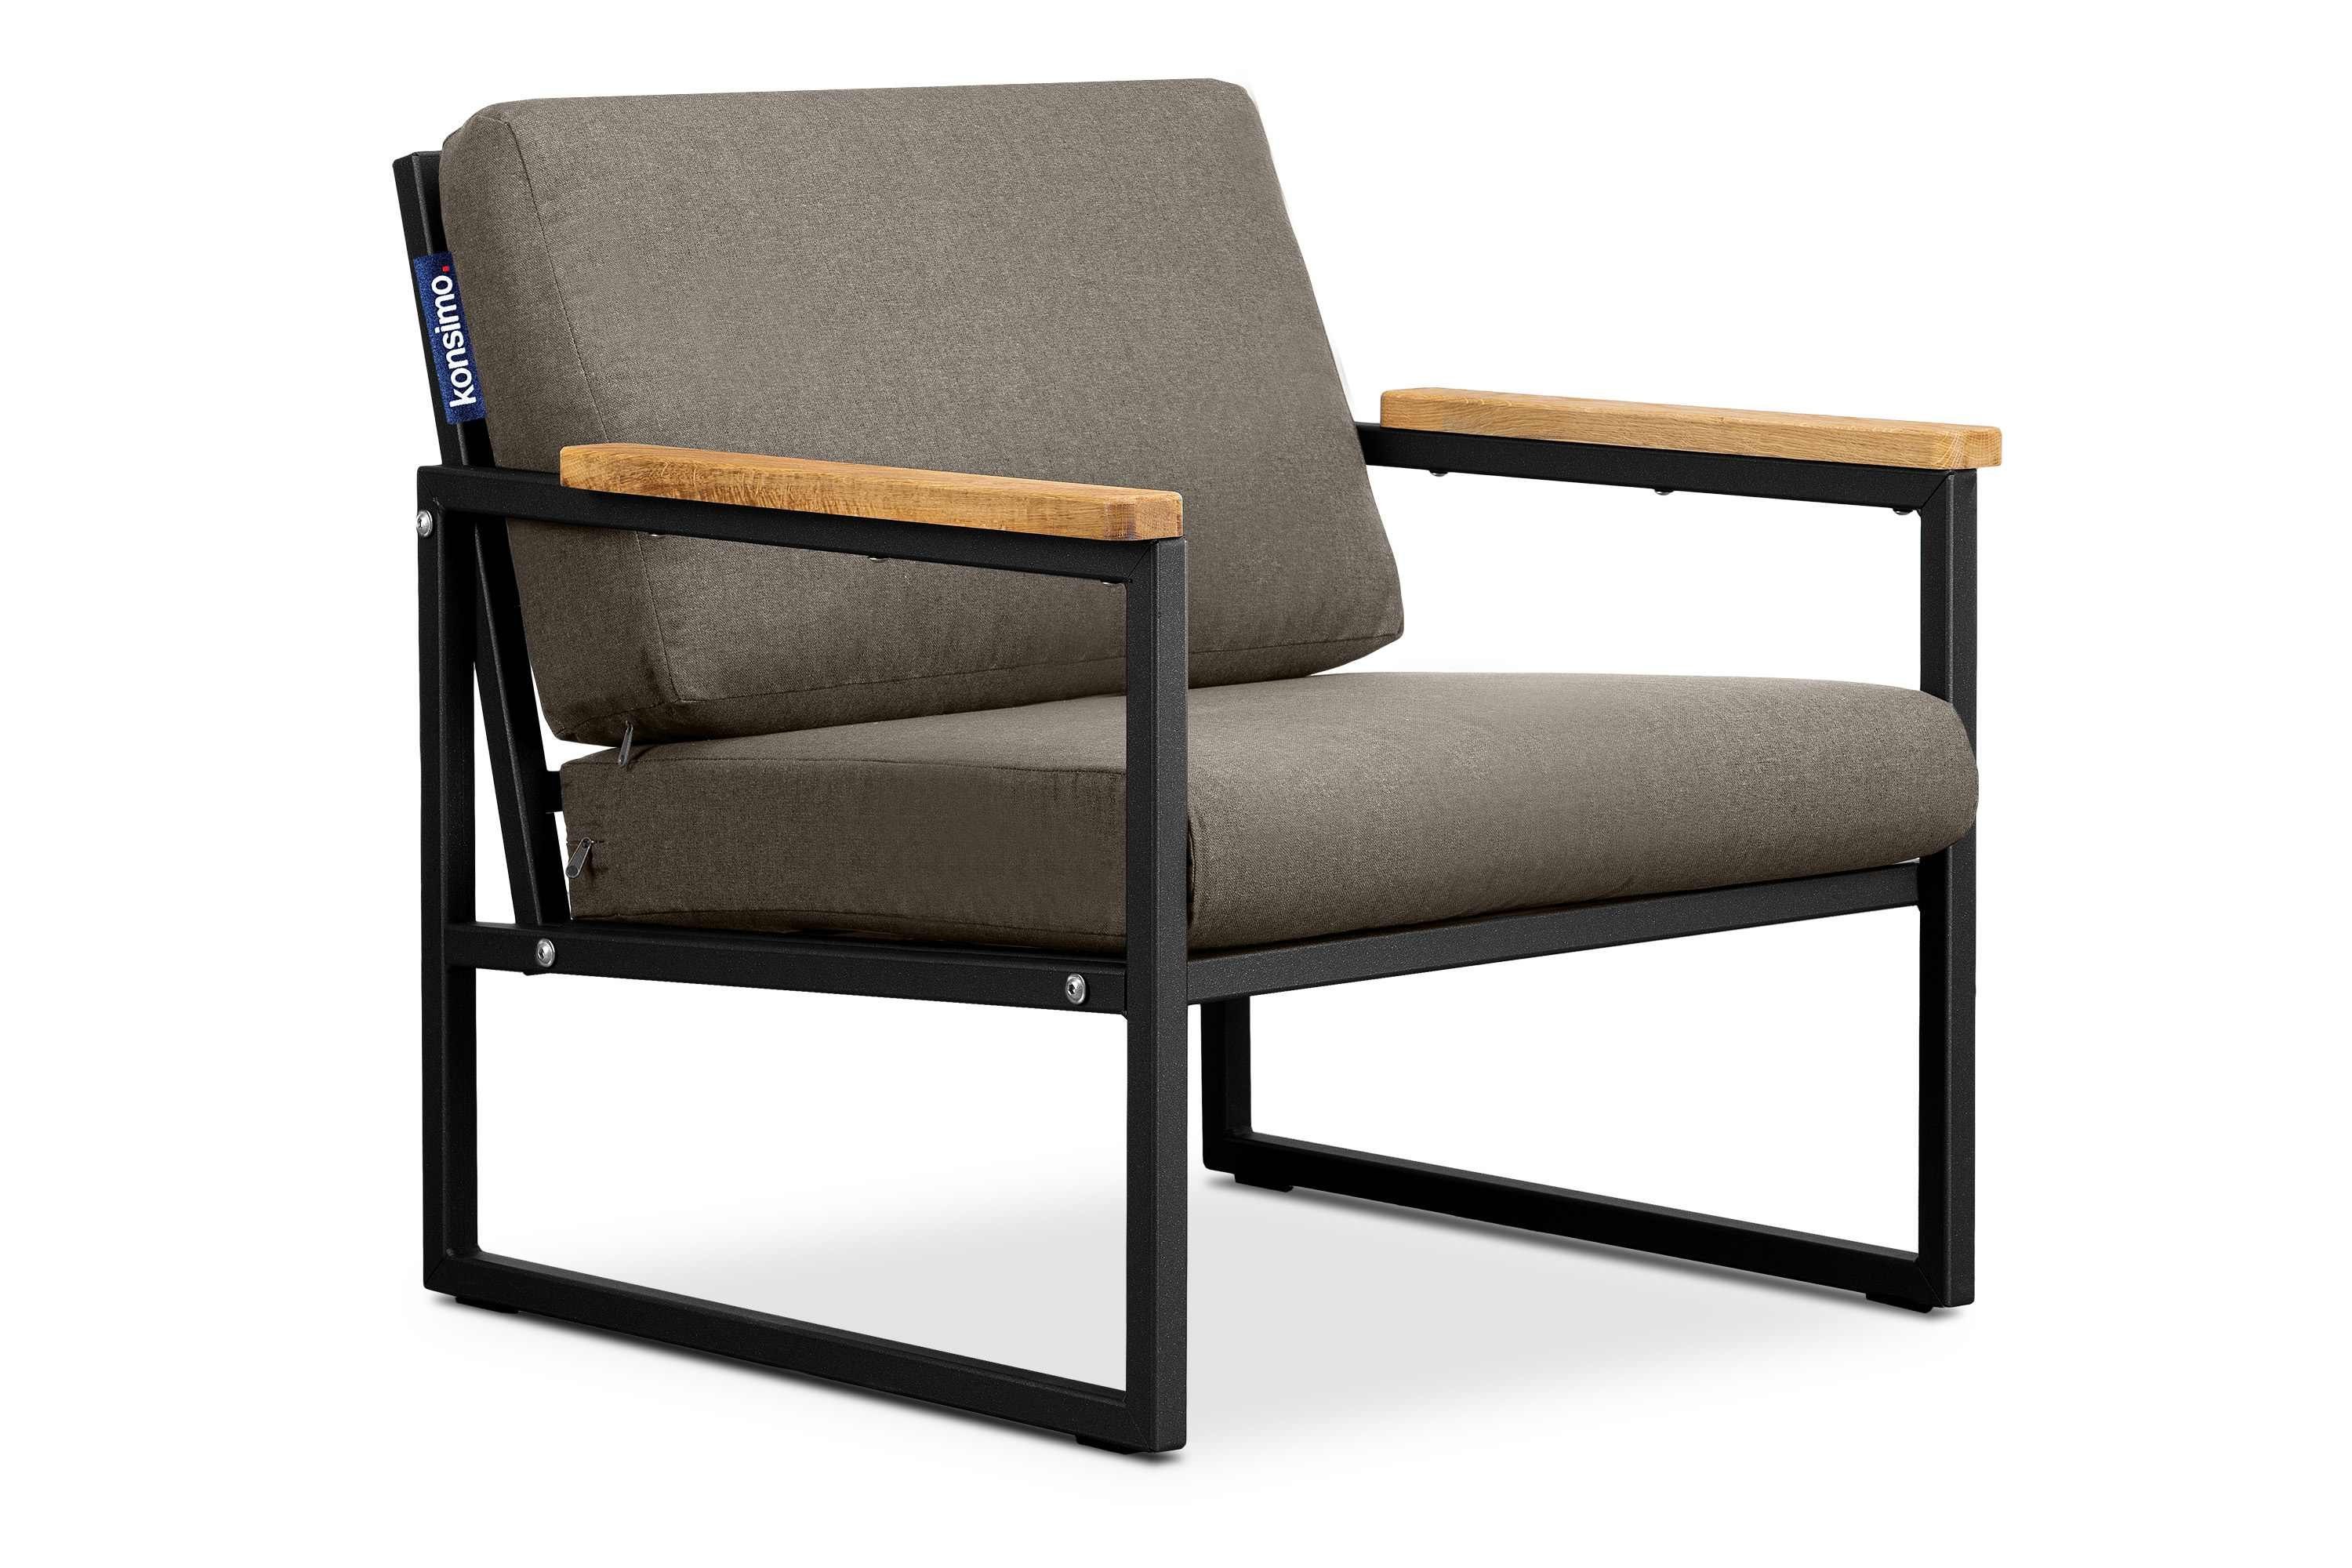 Konsimo Gartensessel TRIBO Garten-Sessel (1x Sessel), schmutz- und wasserabweisend, UV-Beständigkeit, Handläufe aus geölter Eiche, Made in Europe schwarz/beige